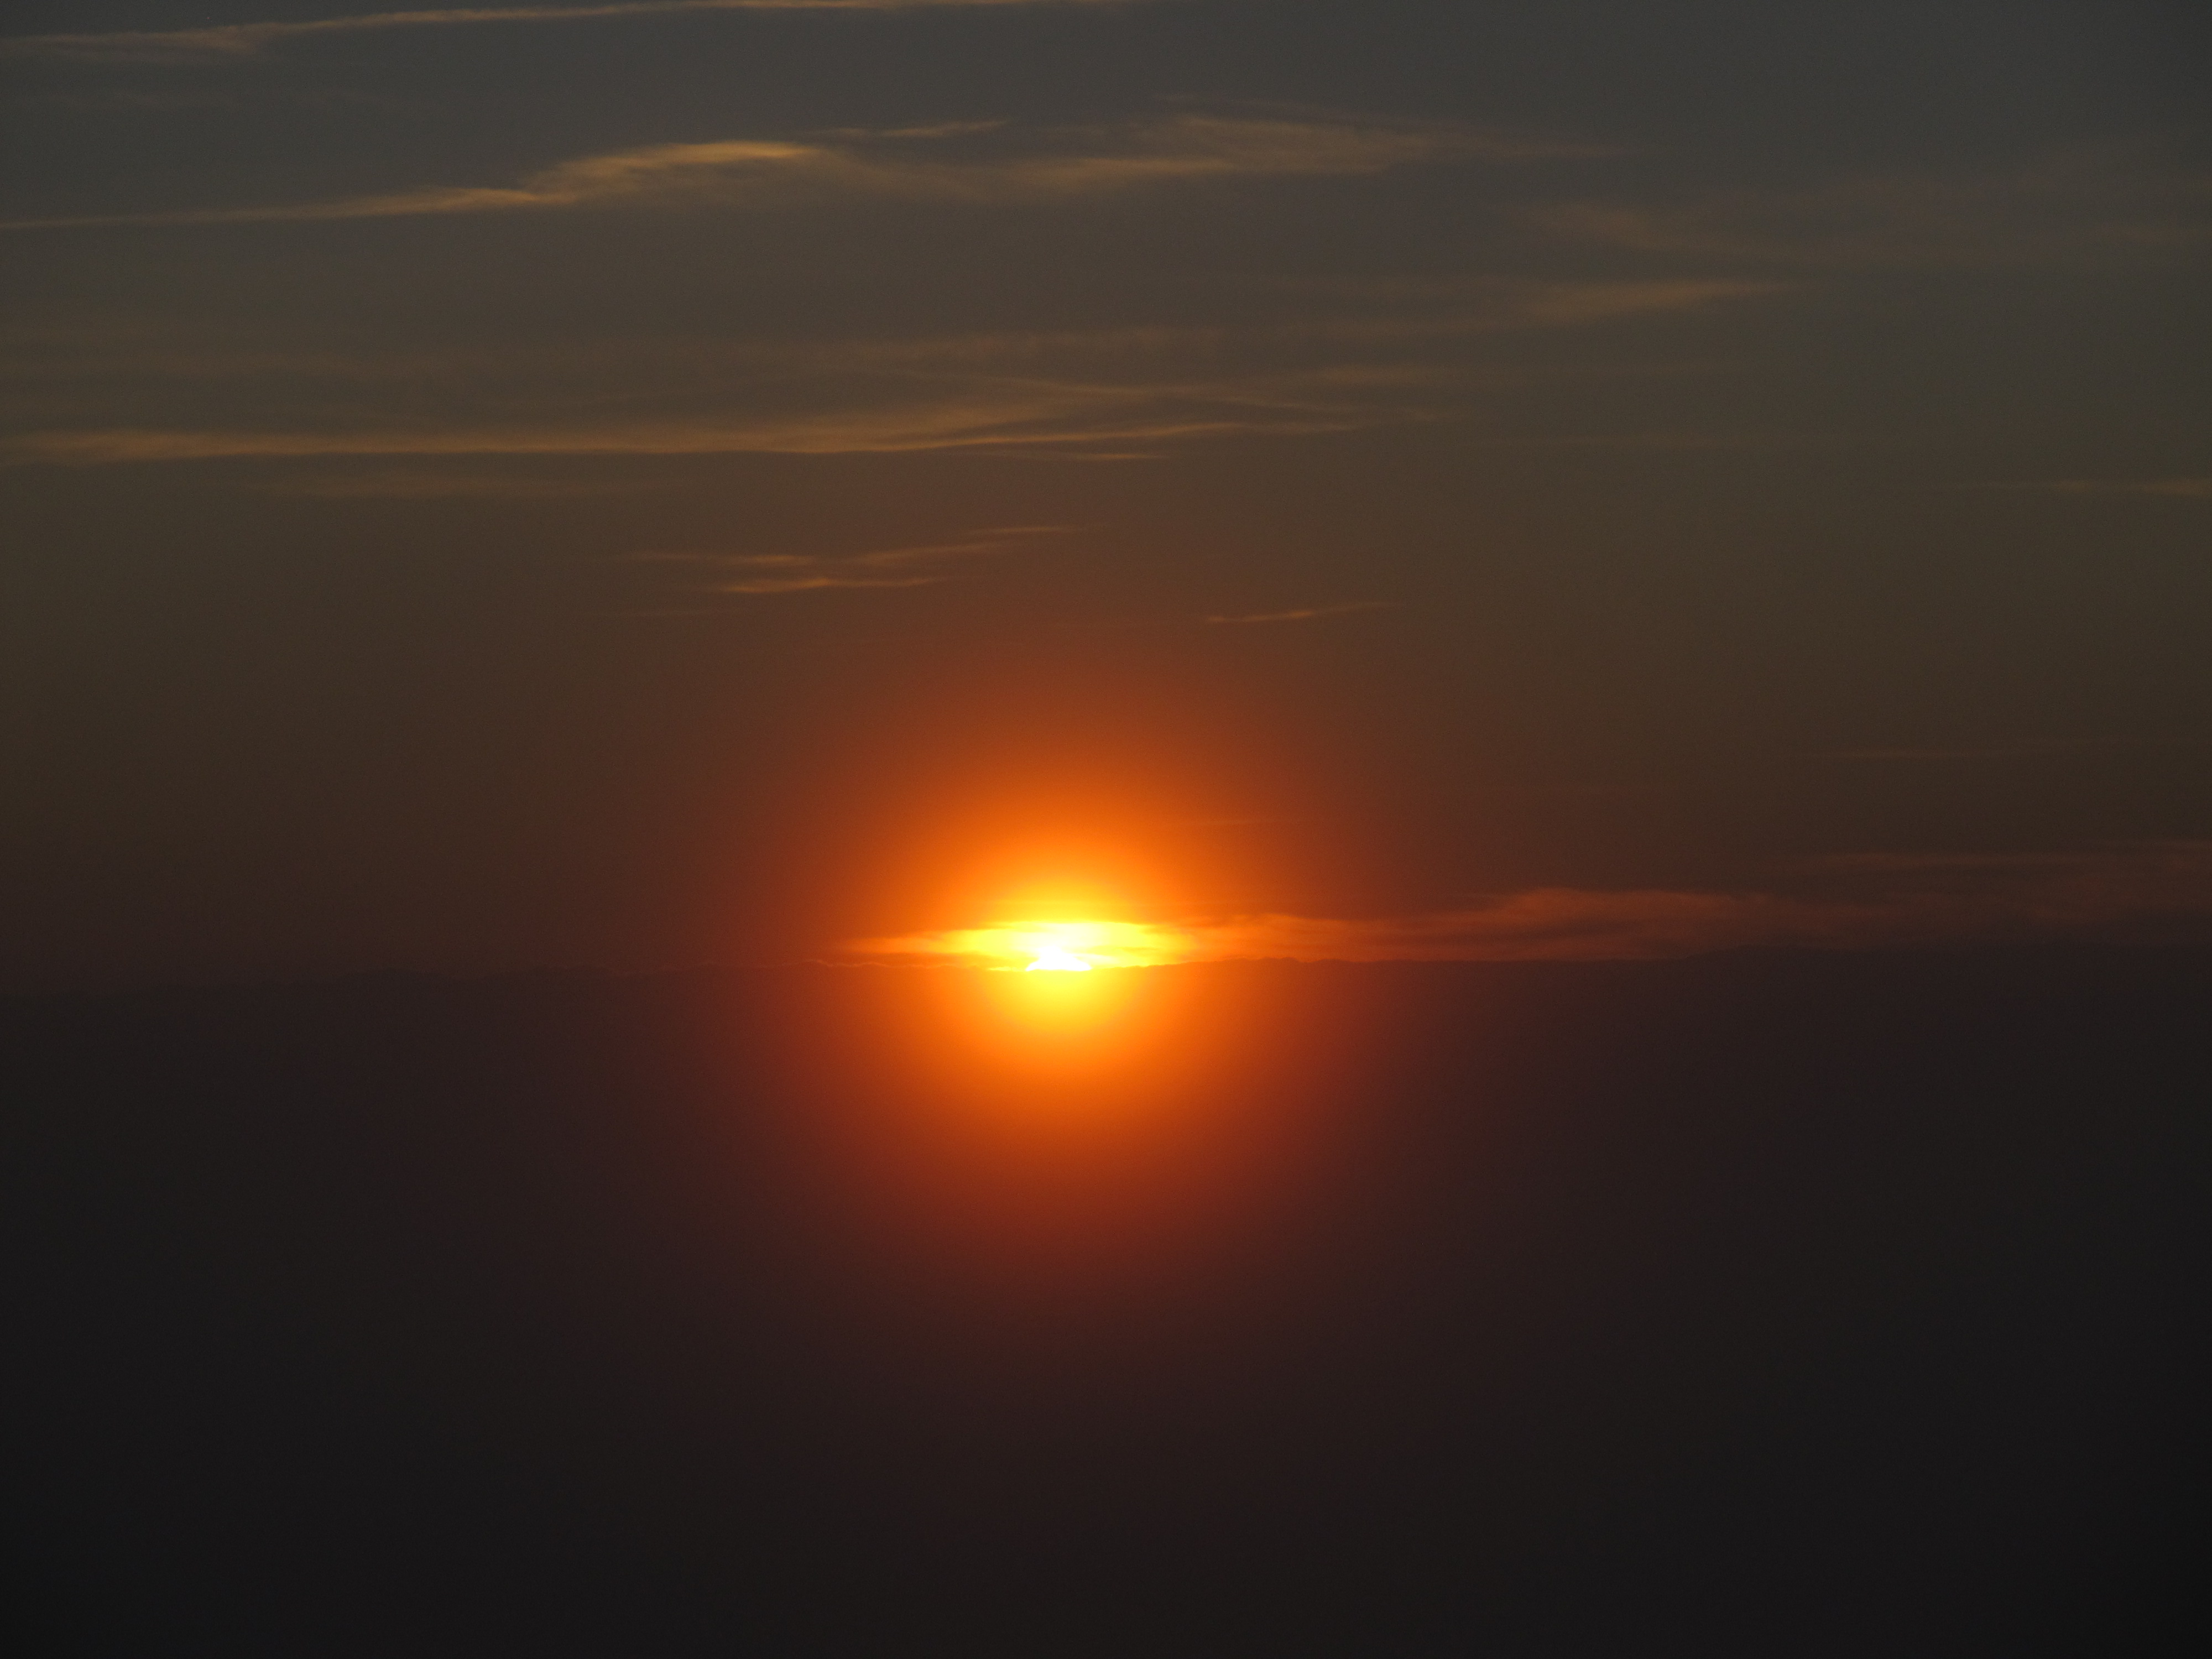 Sunrise near Teide Observatory